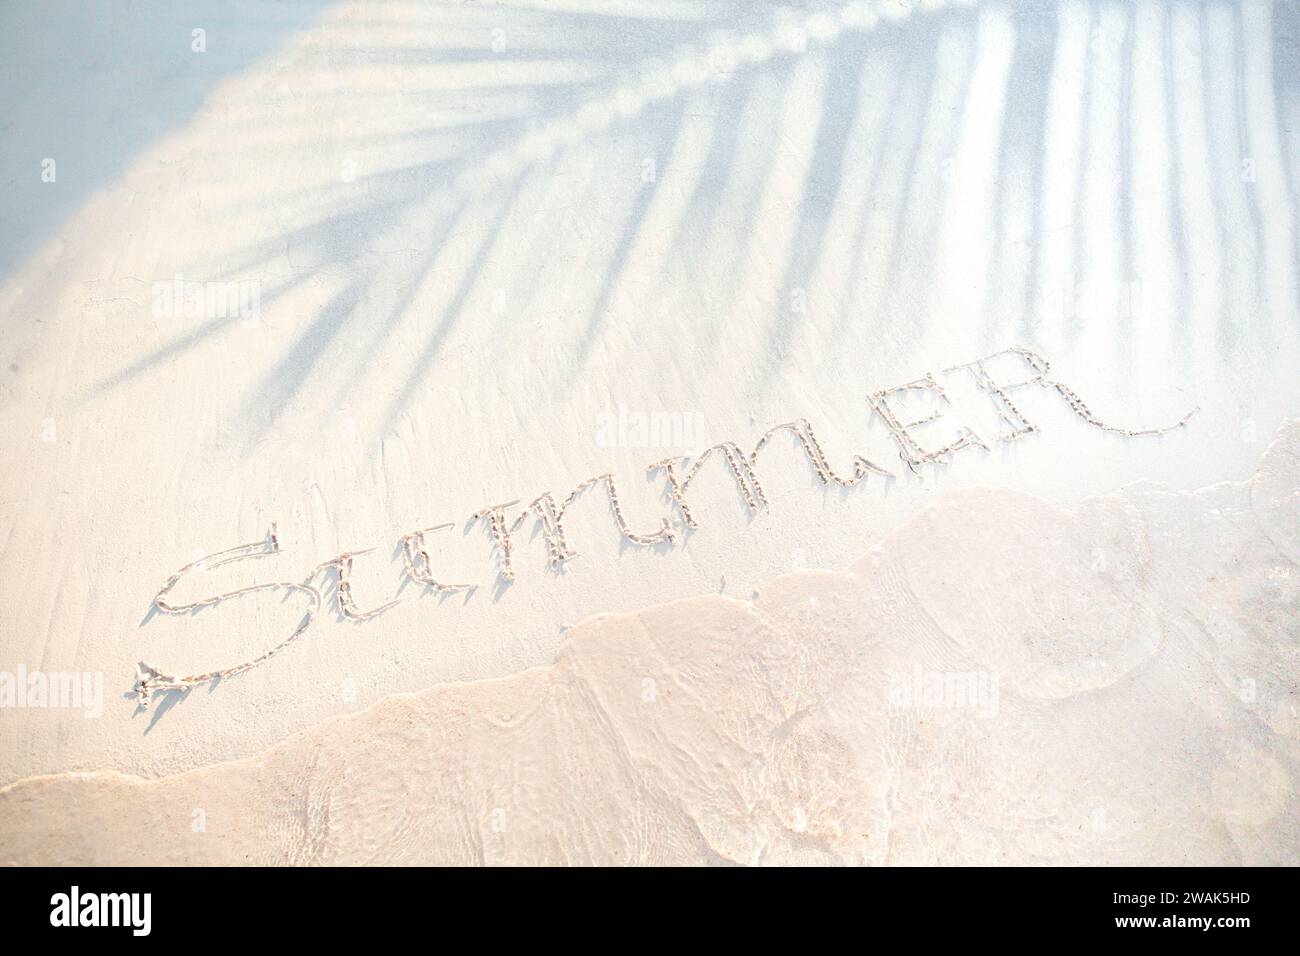 banner estivo per vacanze tropicali. spiaggia sabbiosa, ombra di palme e onde sull'orlo dell'acqua; banner per le vacanze estive con spazio copia Foto Stock